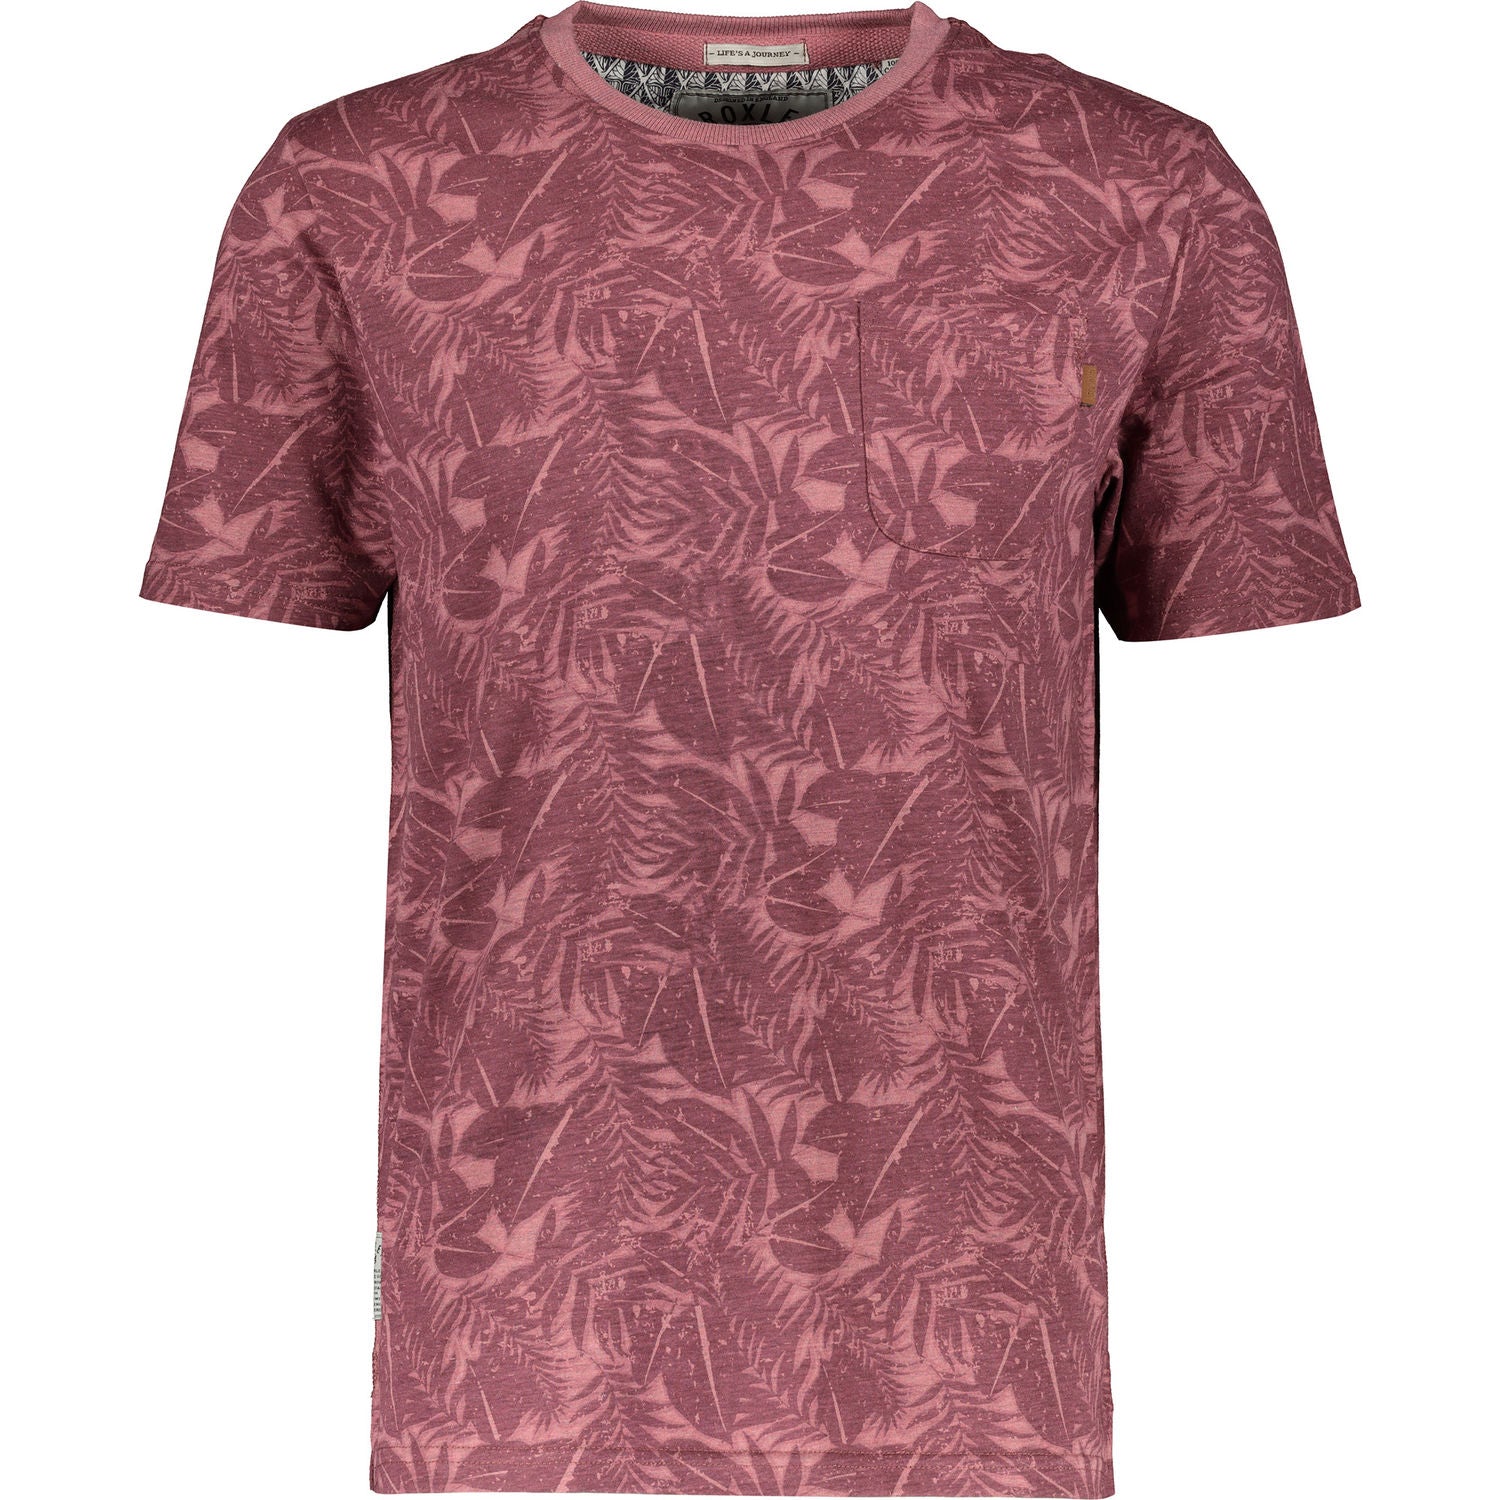 Croxley - Lichfield T-Shirt - LabelledUp.com